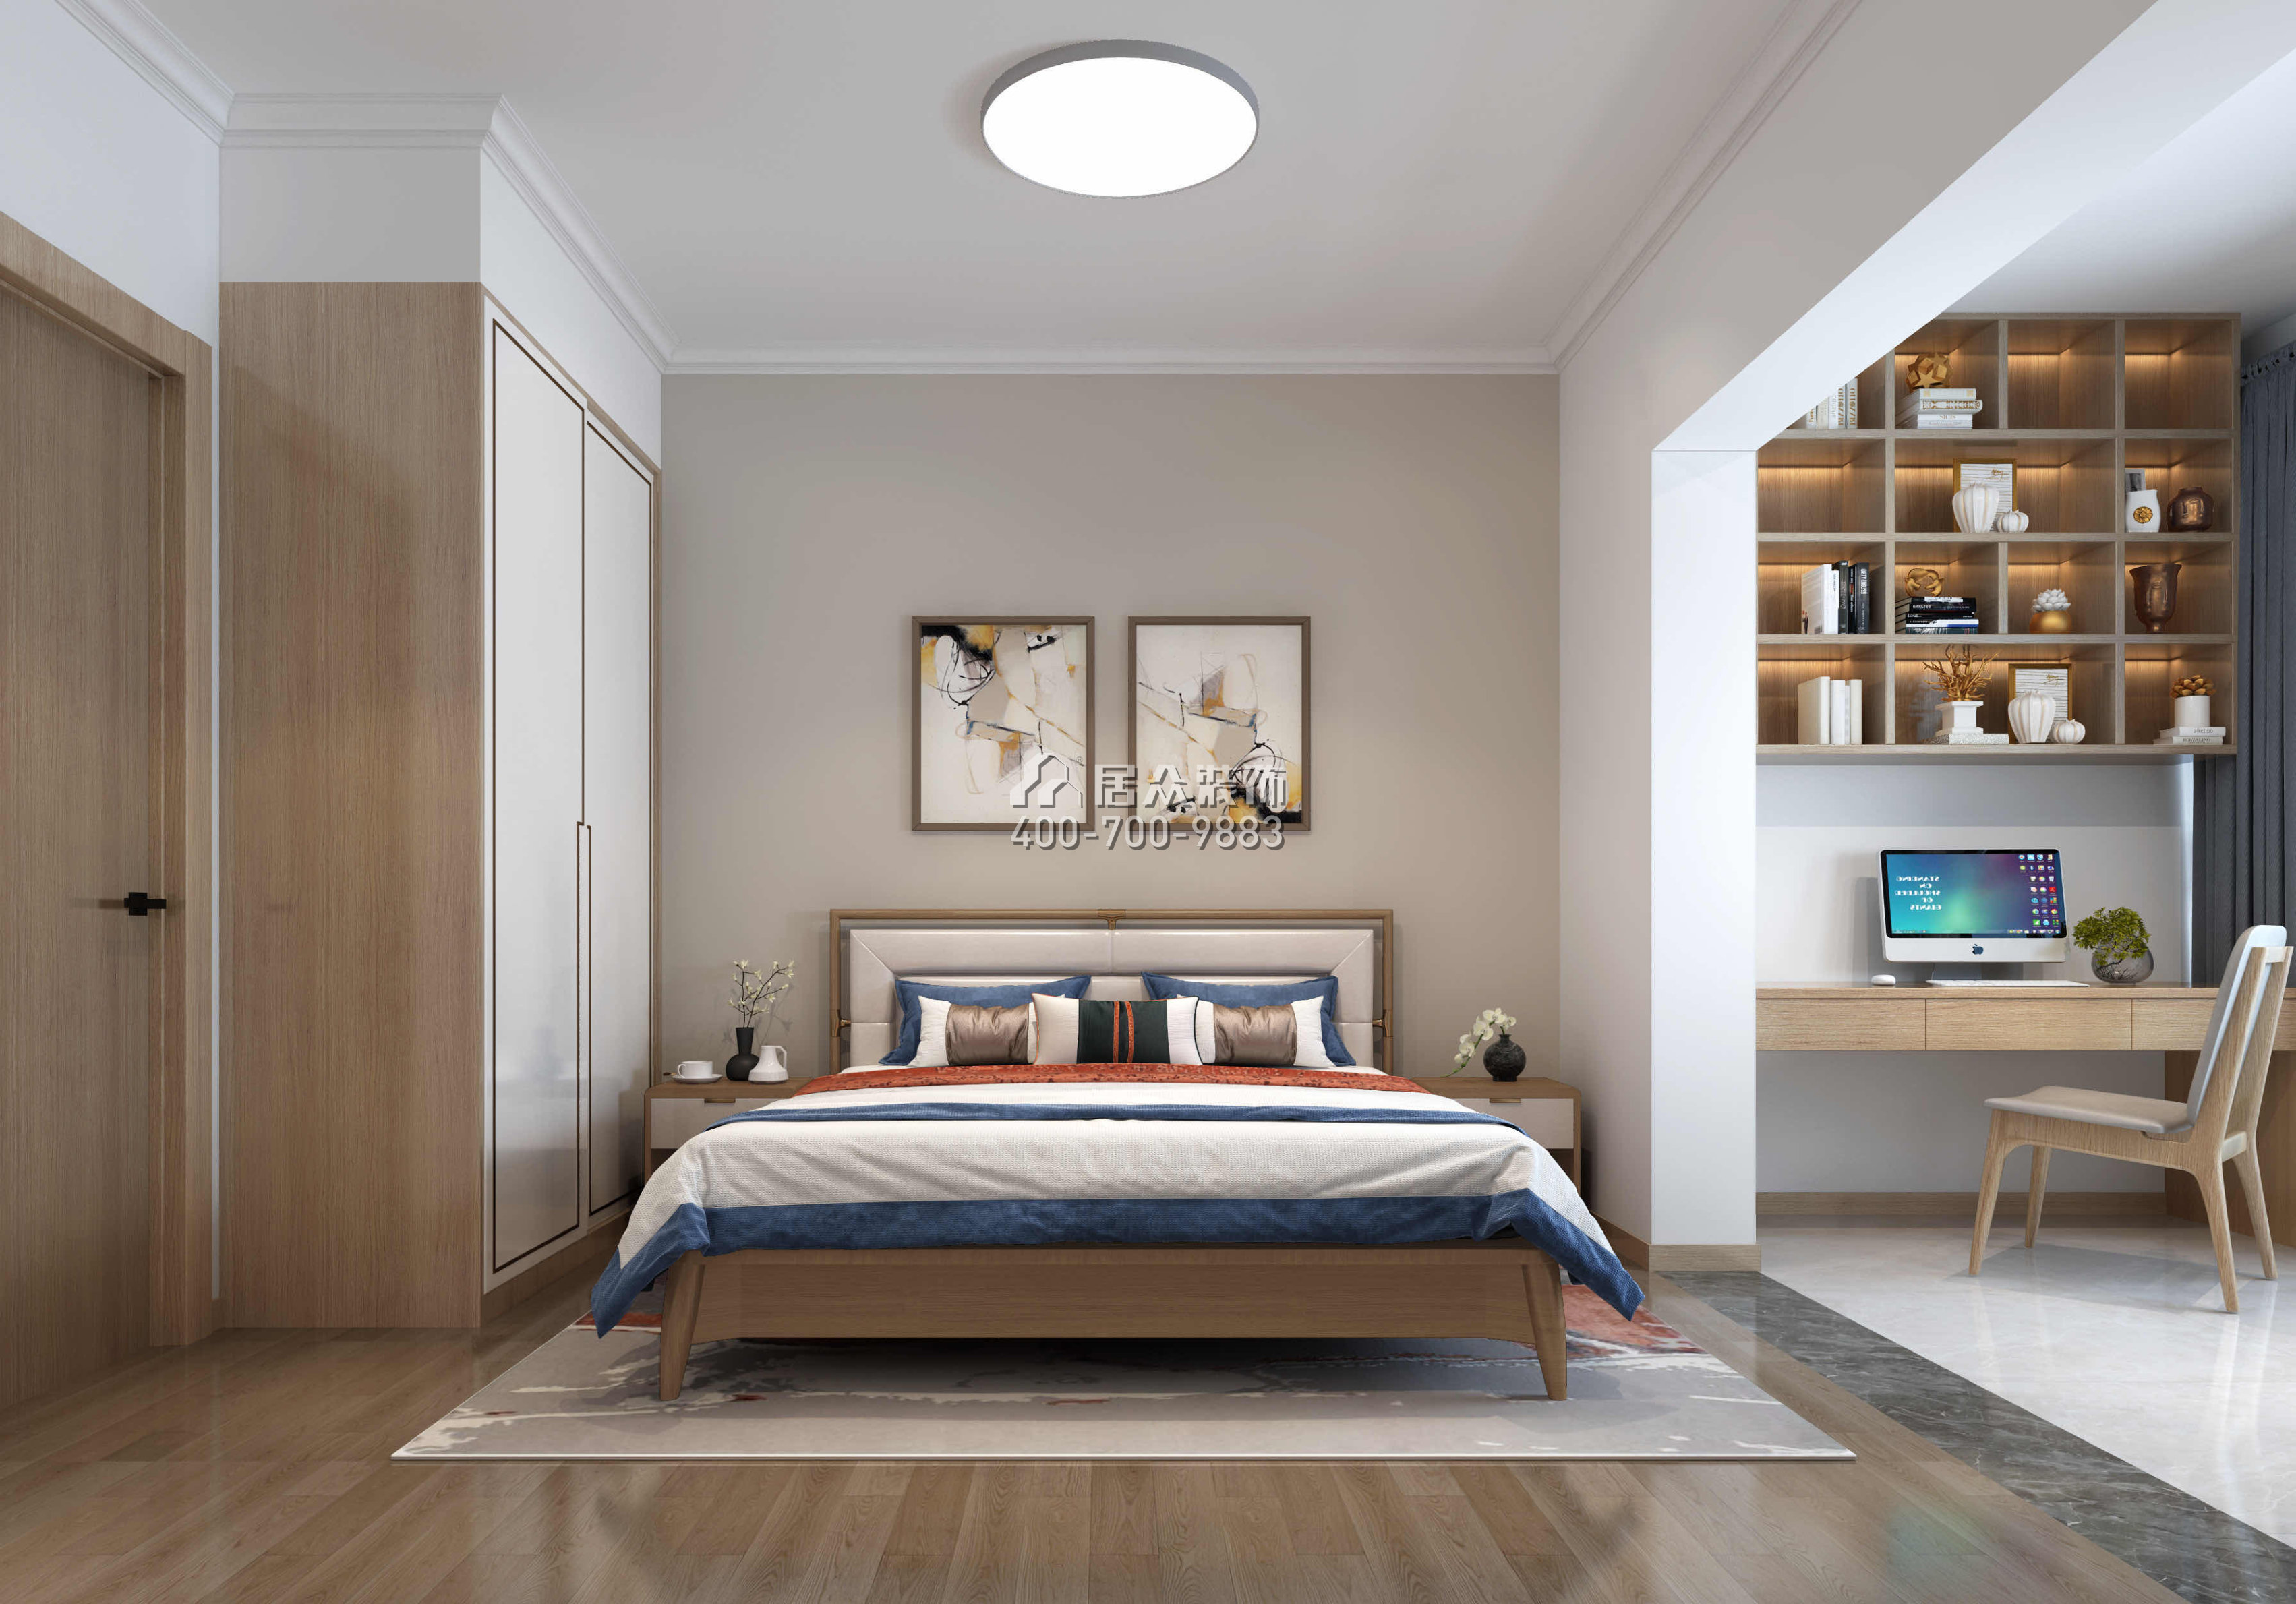 中珠九悦138平方米中式风格平层户型卧室装修效果图